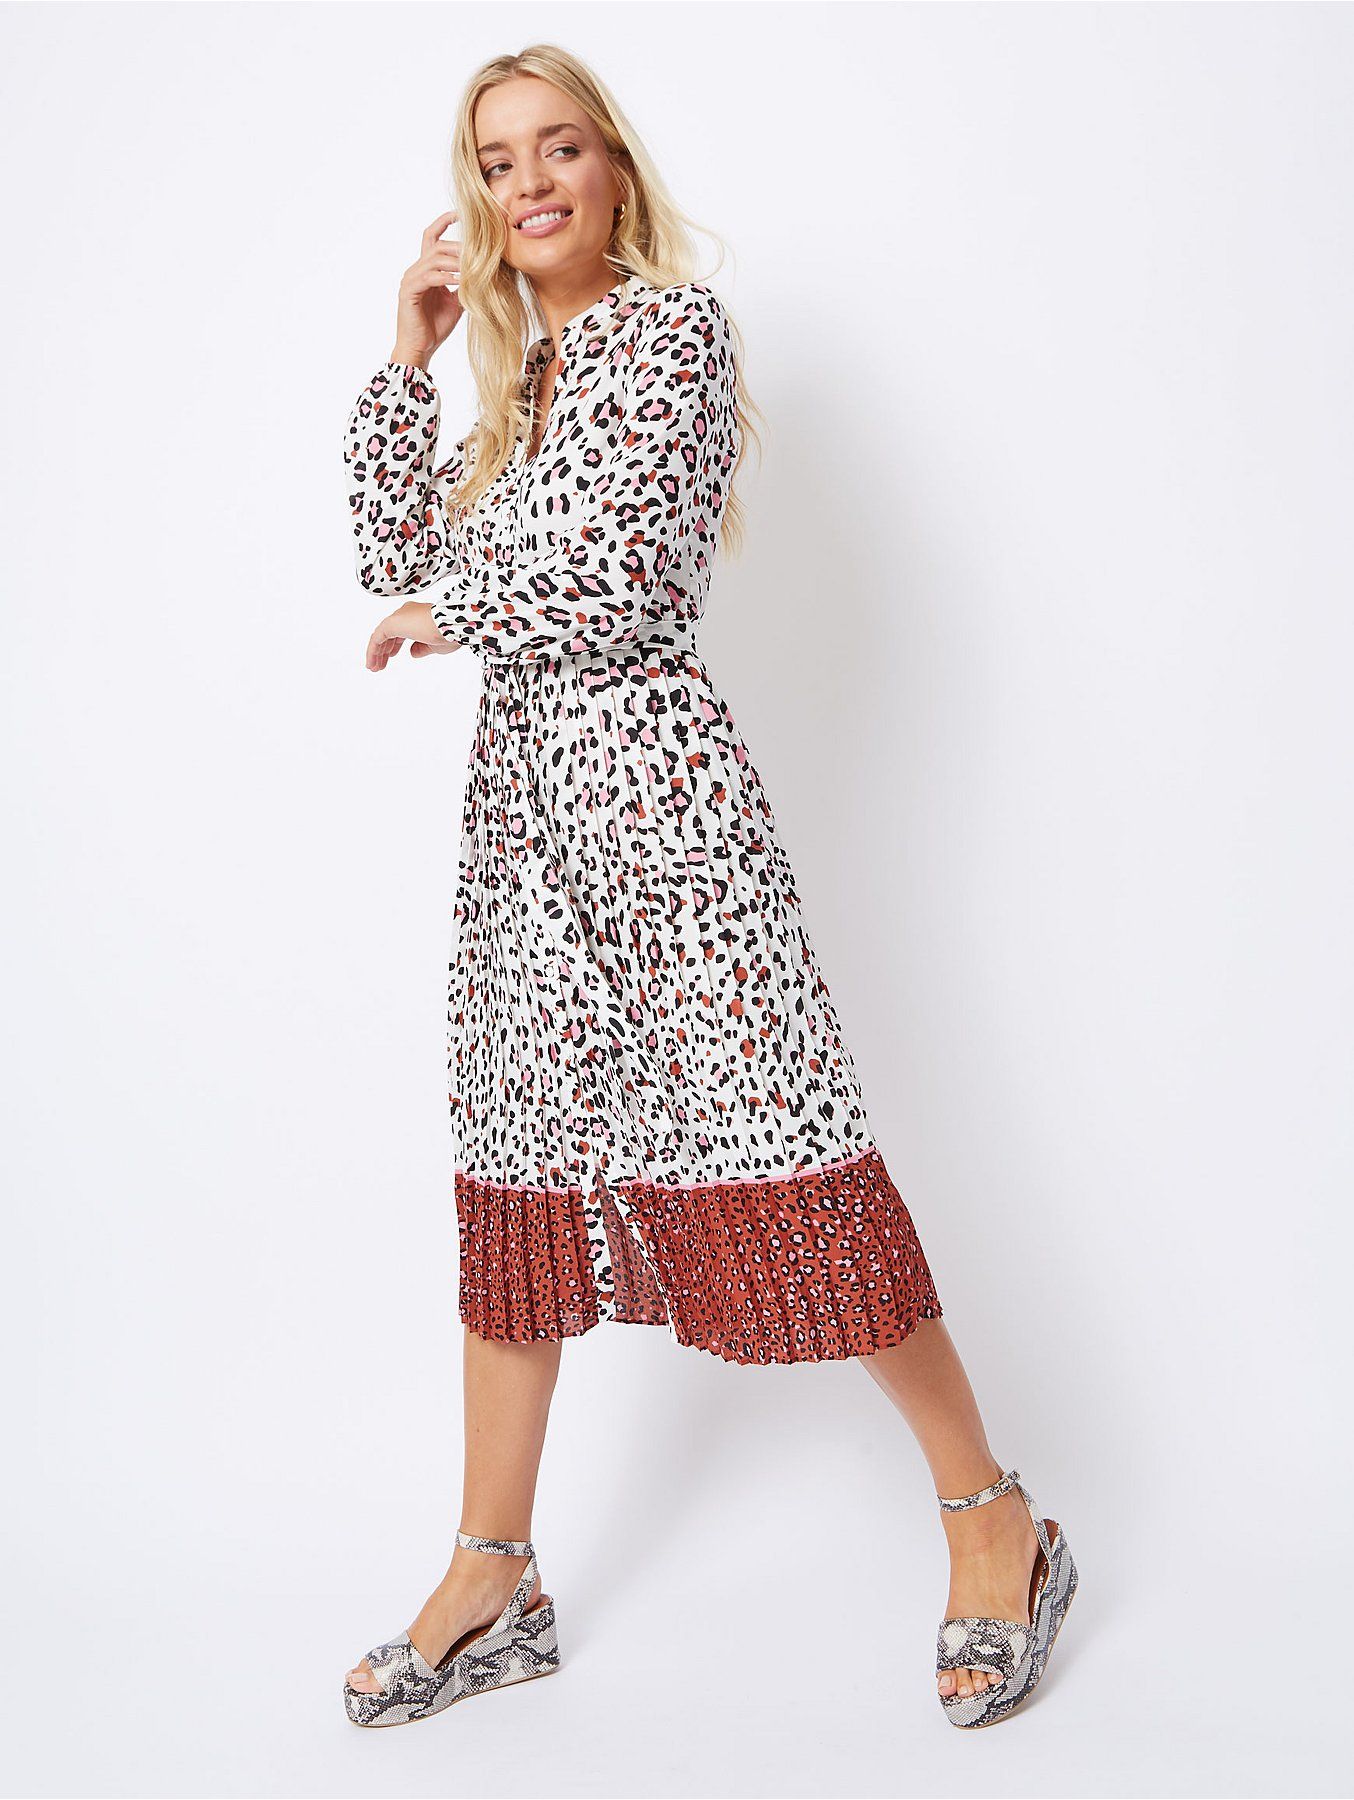 george asda leopard print dress